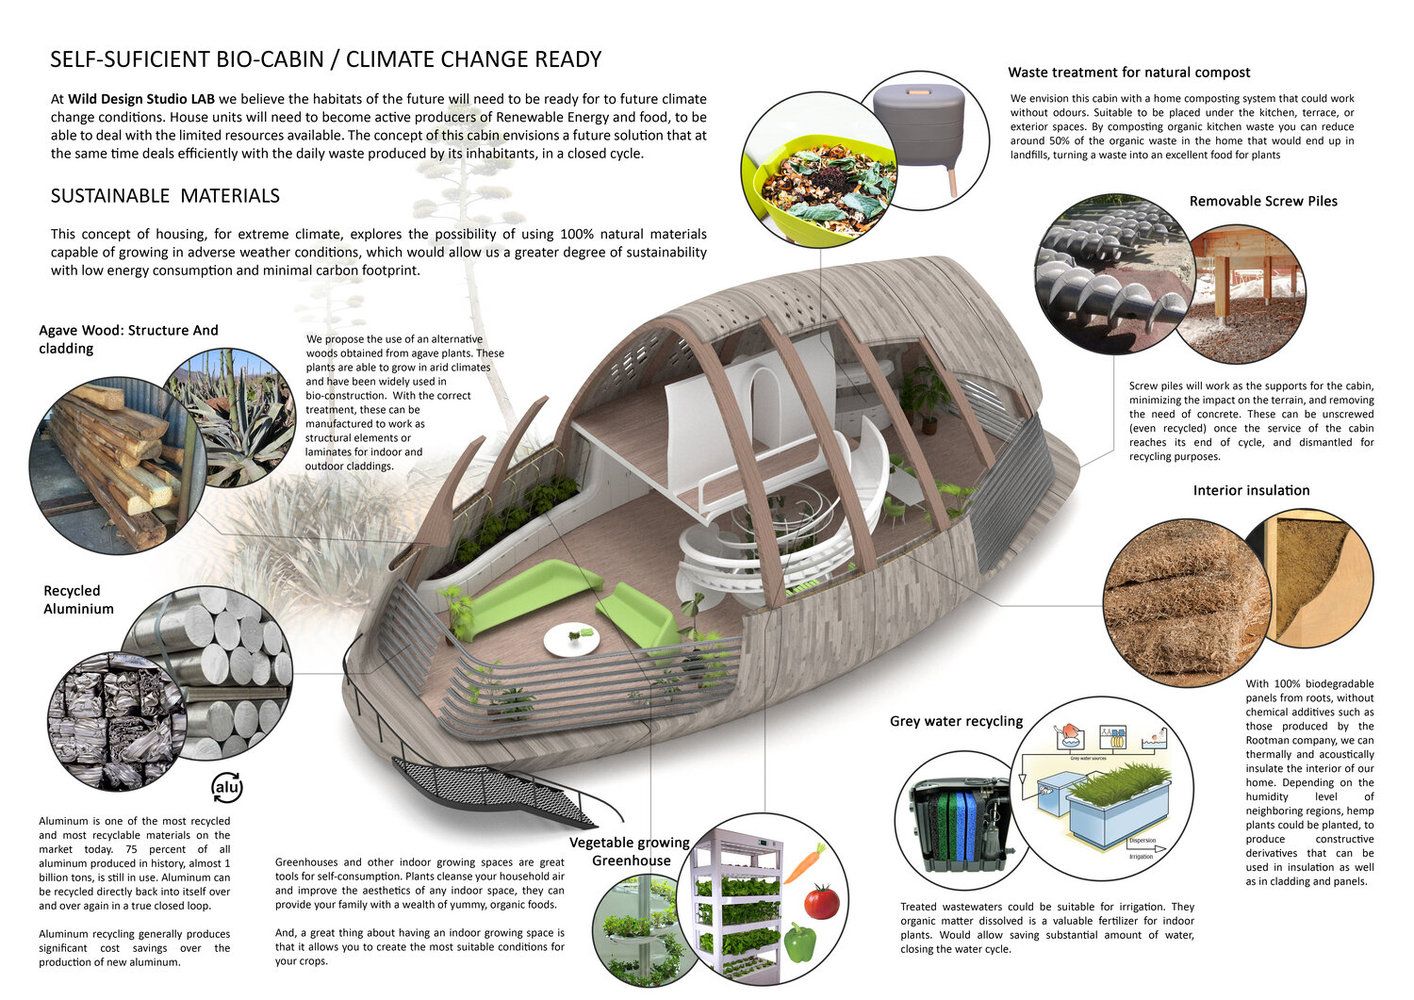 Cápsula projetada para suportar um futuro climático com zonas áridas e climas hostis.